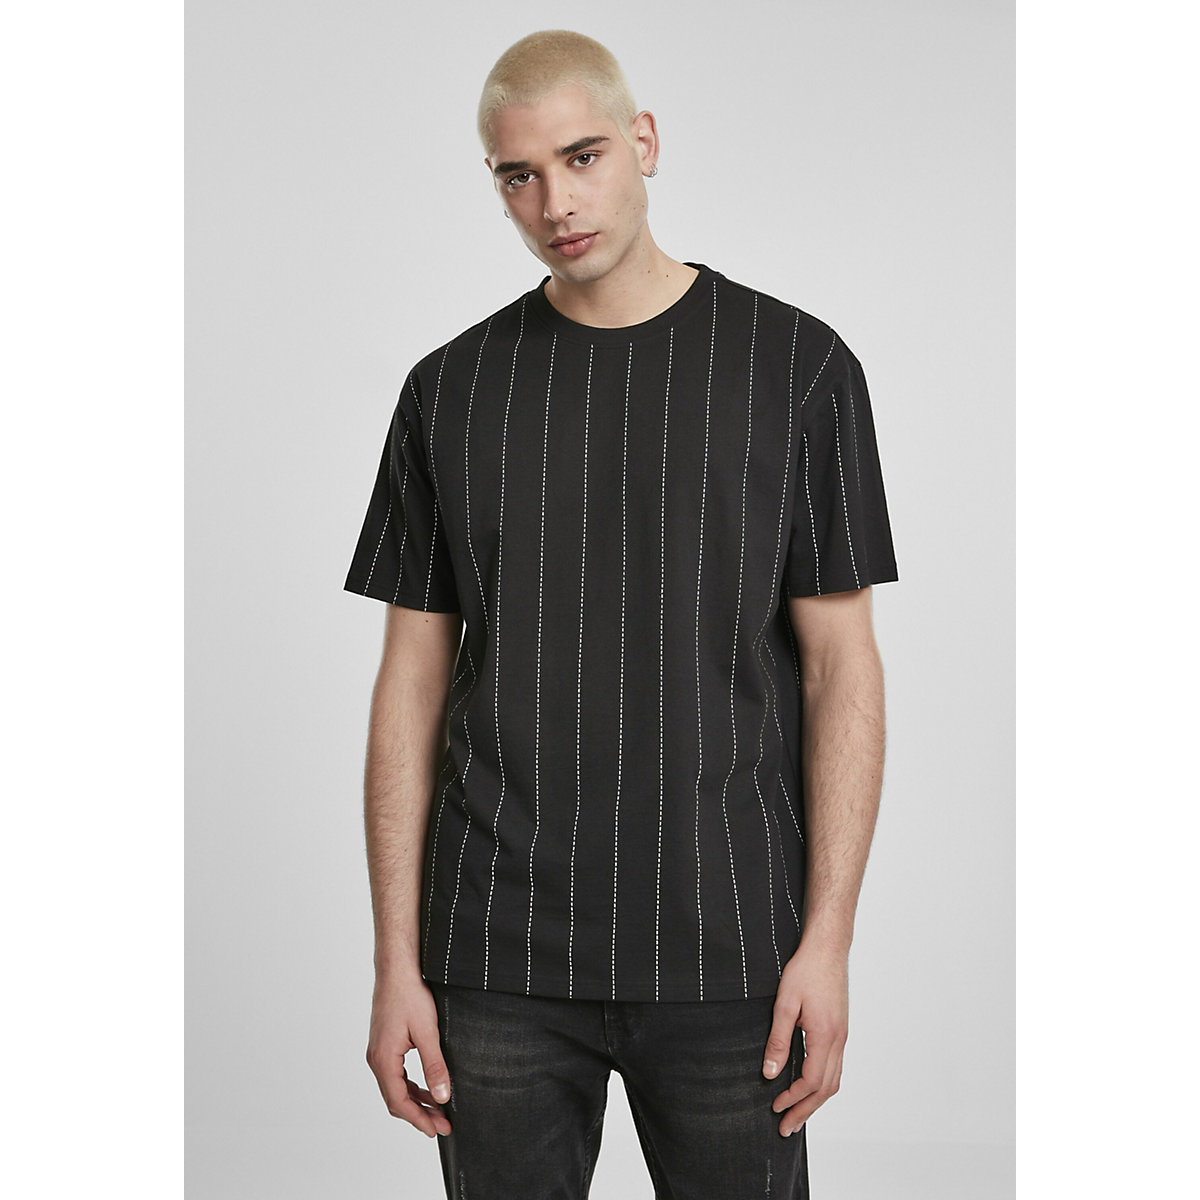 Urban Classics Shirt schwarz/weiß YN6828